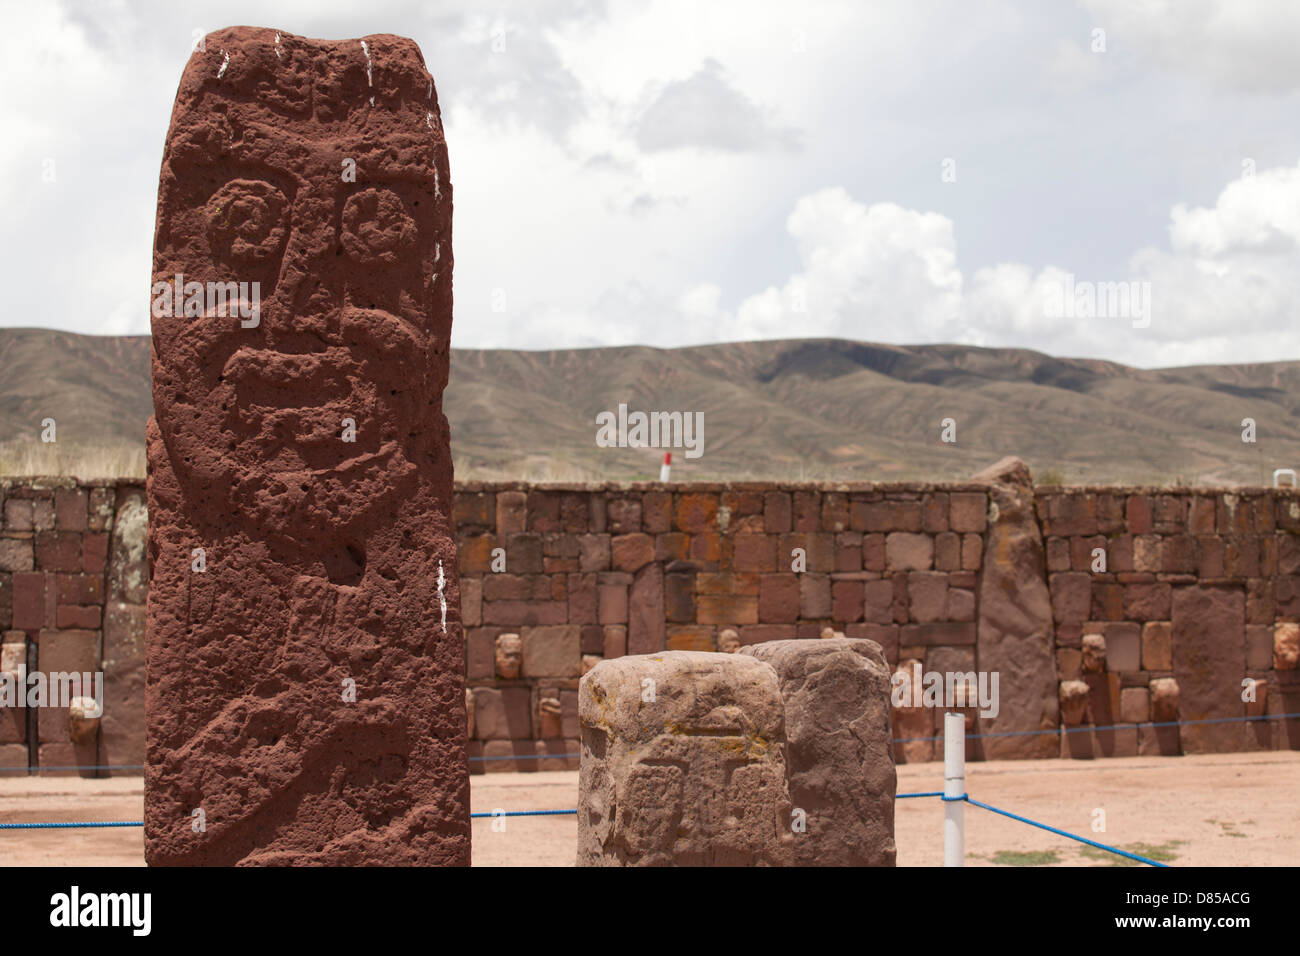 La storica città di cultura Tiwanaku nell'altopiano boliviano Foto Stock